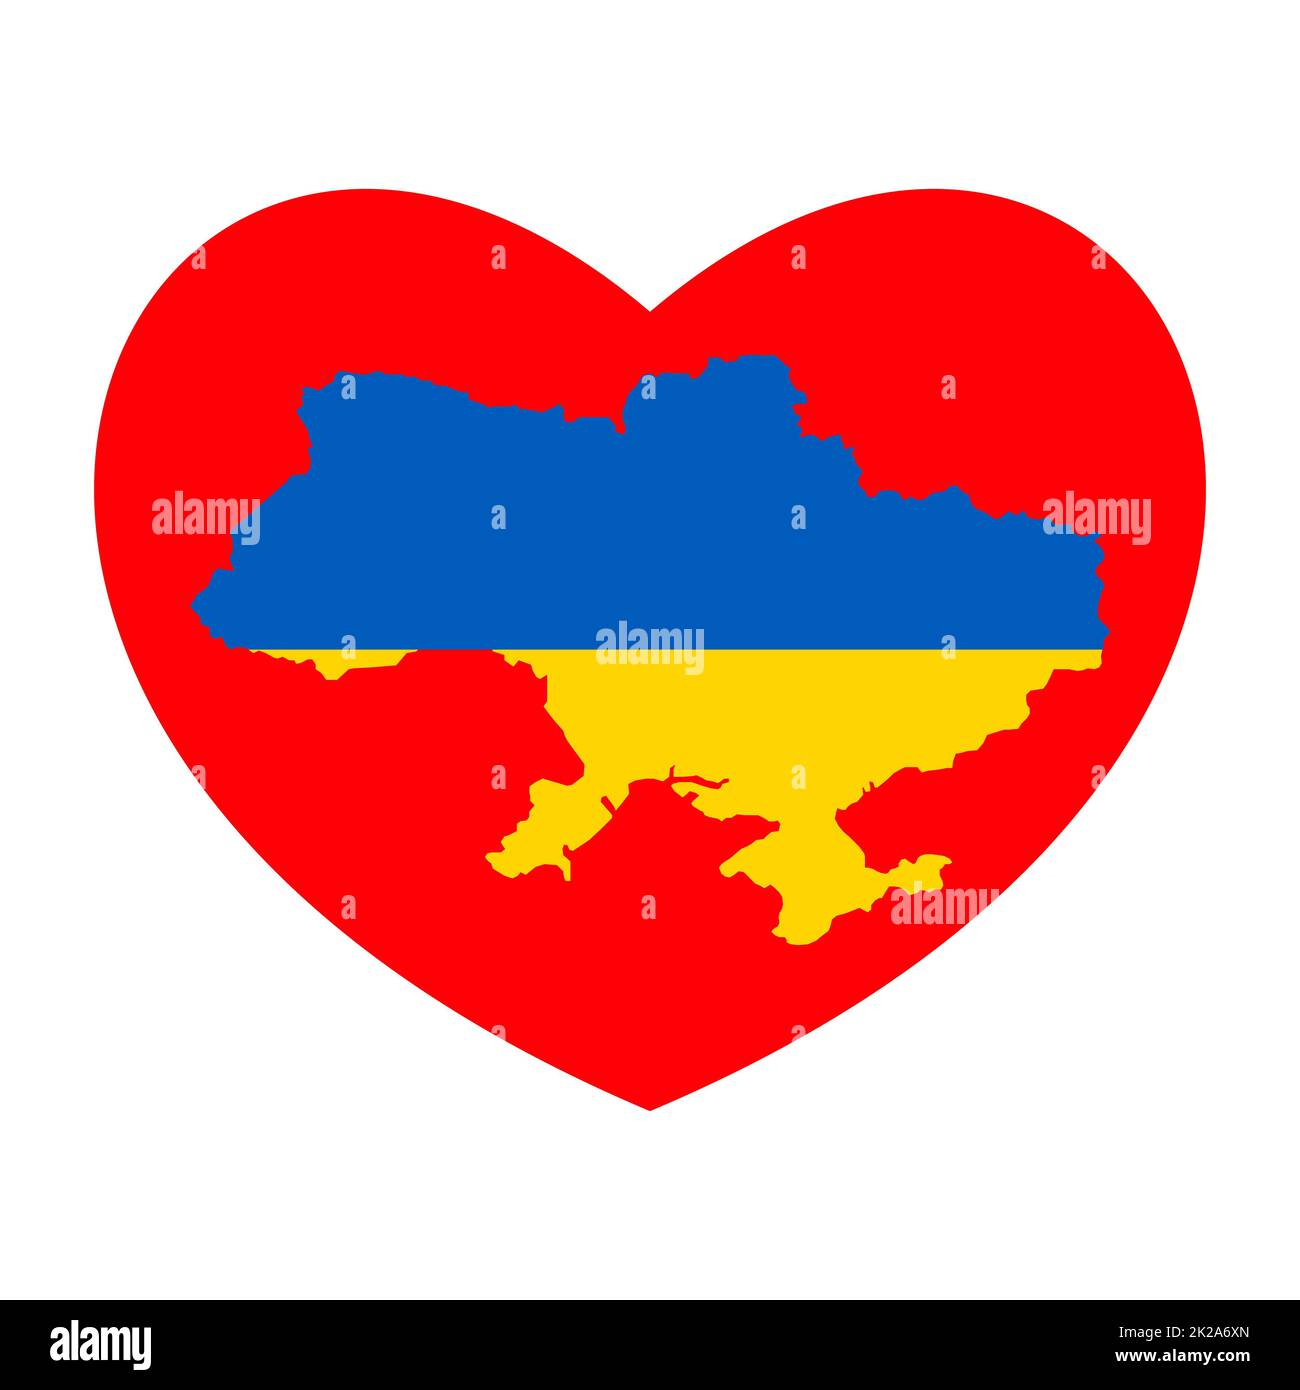 Cuore rosso e Ucraina mappa. Astratto bandiera Ucraina blu gialla con simbolo d'amore. Idea concettuale - con l'Ucraina nel suo cuore. Sostegno patriottico al paese durante l'occupazione. Pregate per l'ucraina. Foto Stock